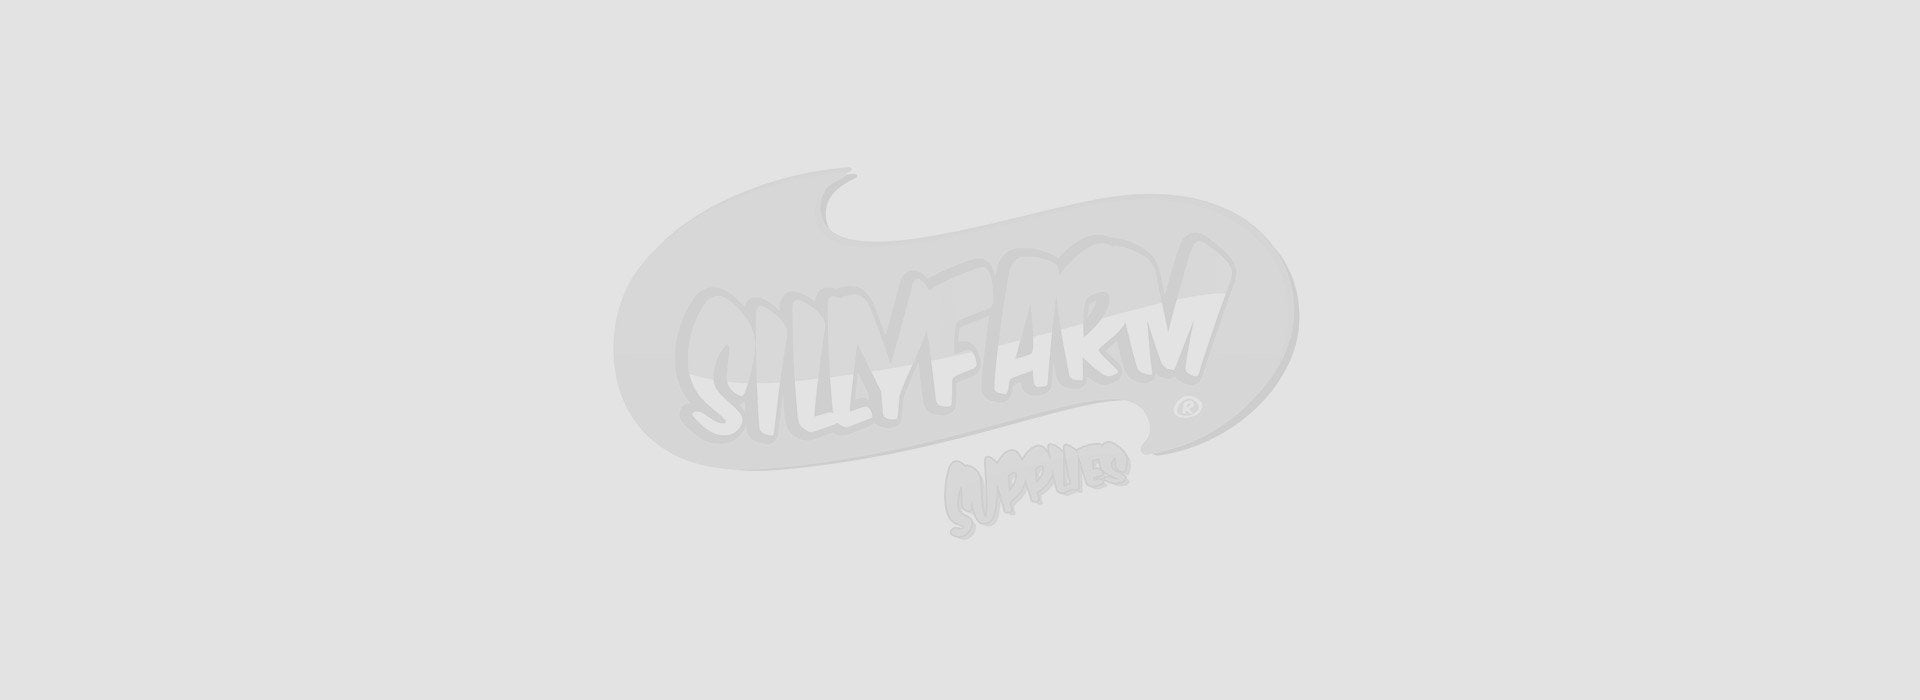 Brand X | Silly Farm Supplies